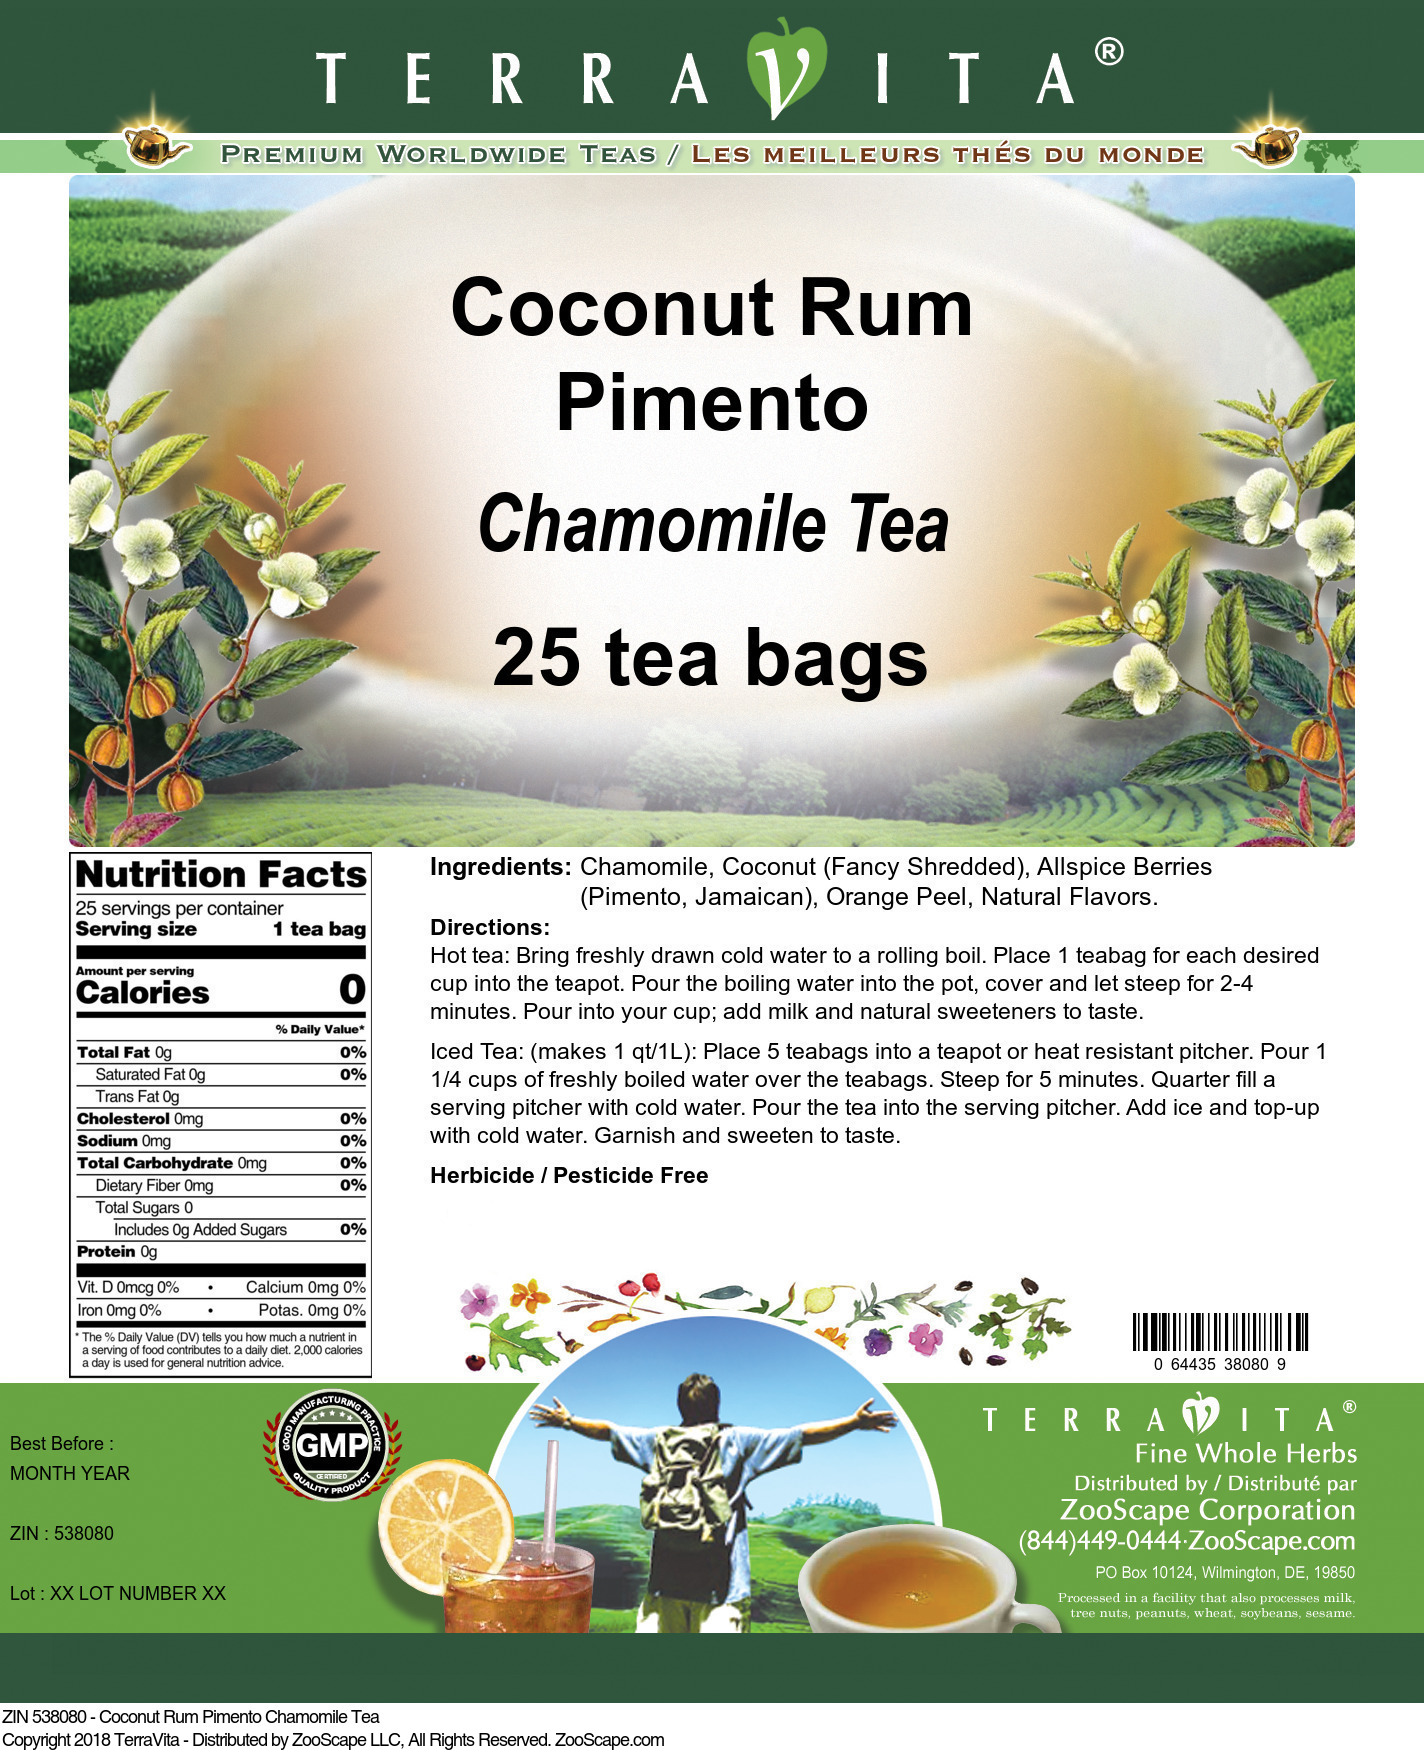 Coconut Rum Pimento Chamomile Tea - Label